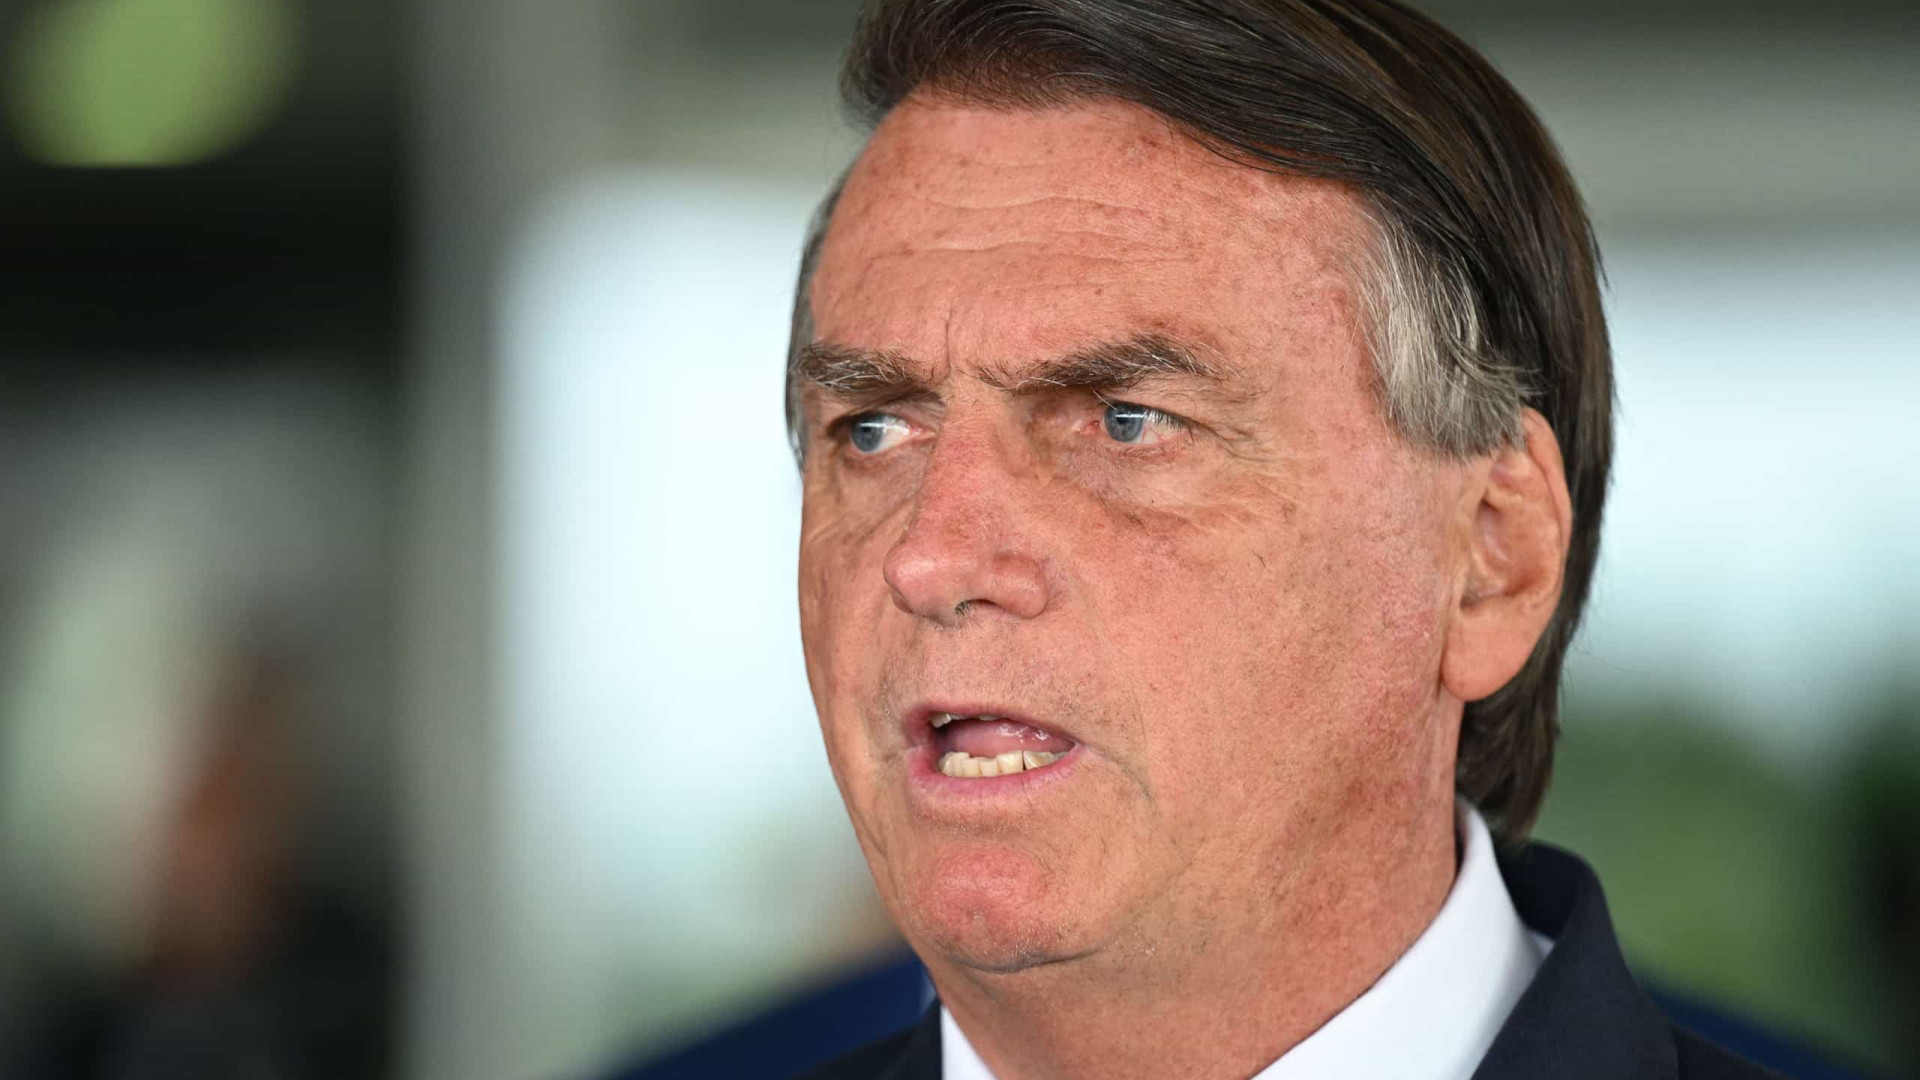 'Como foi difícil ficar 2 meses calado, buscando alternativas', diz Bolsonaro